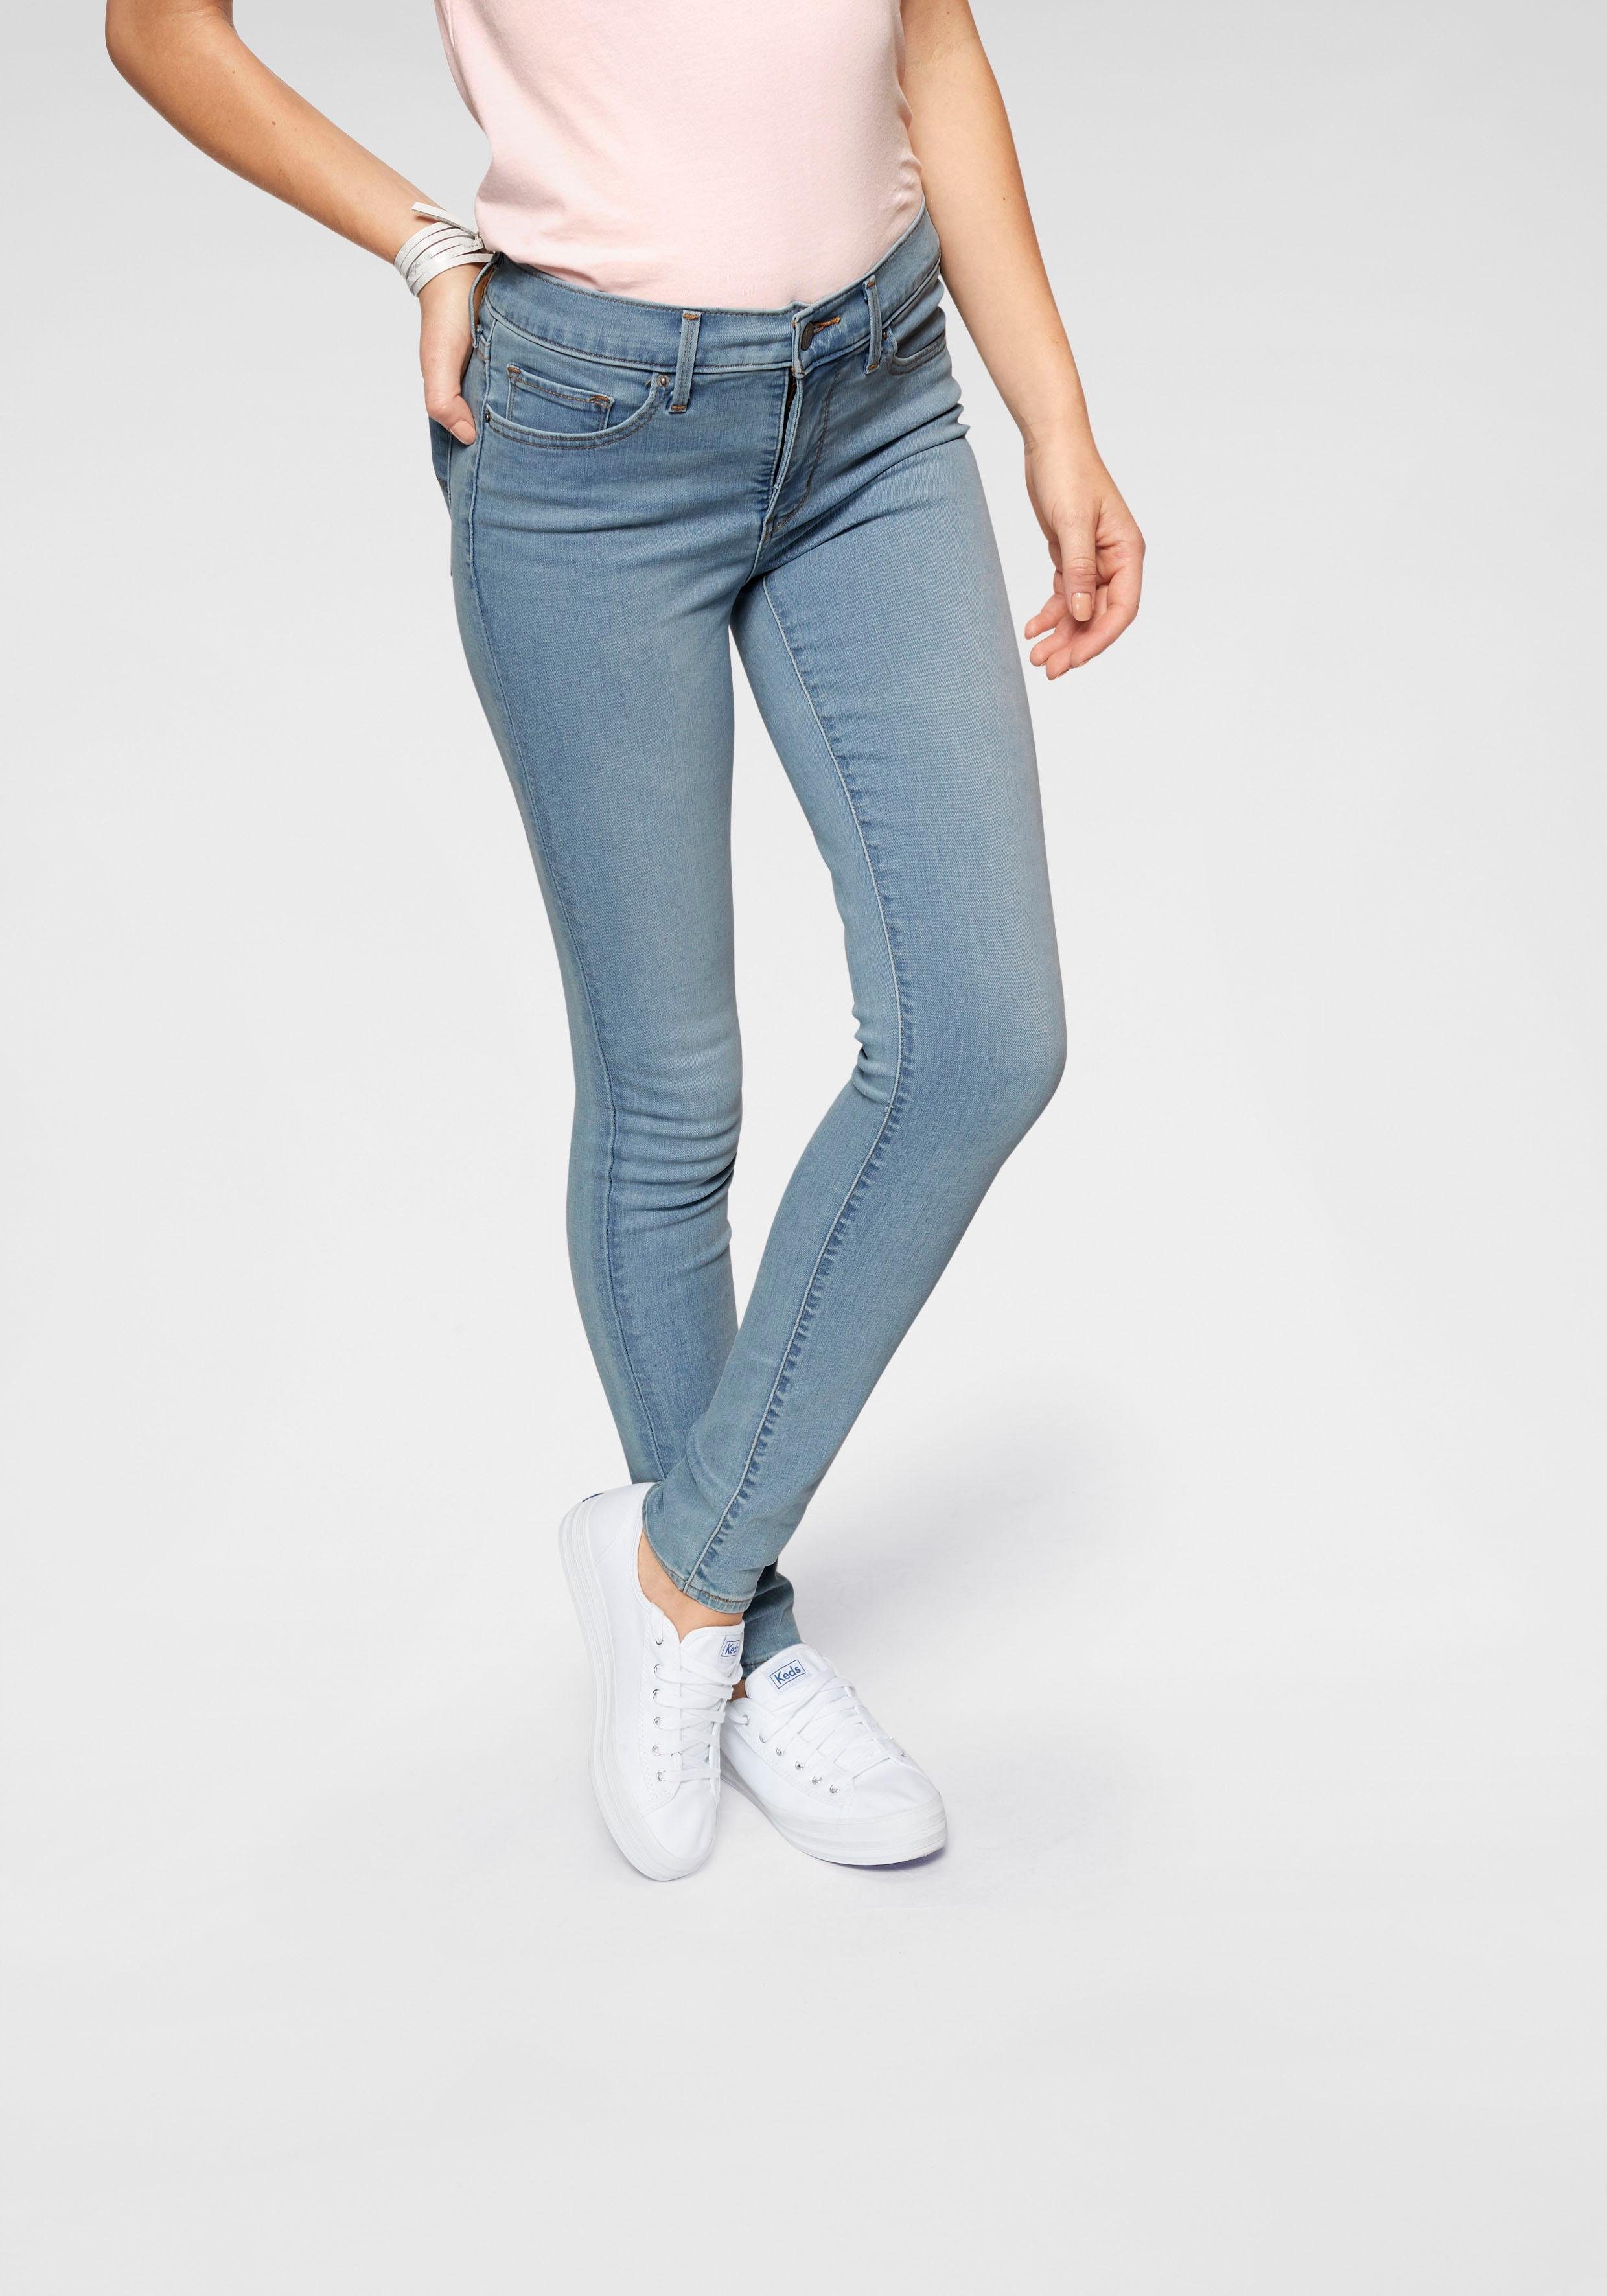 Damen Jeans online kaufen » Jeanshosen Trends 2022 | OTTO